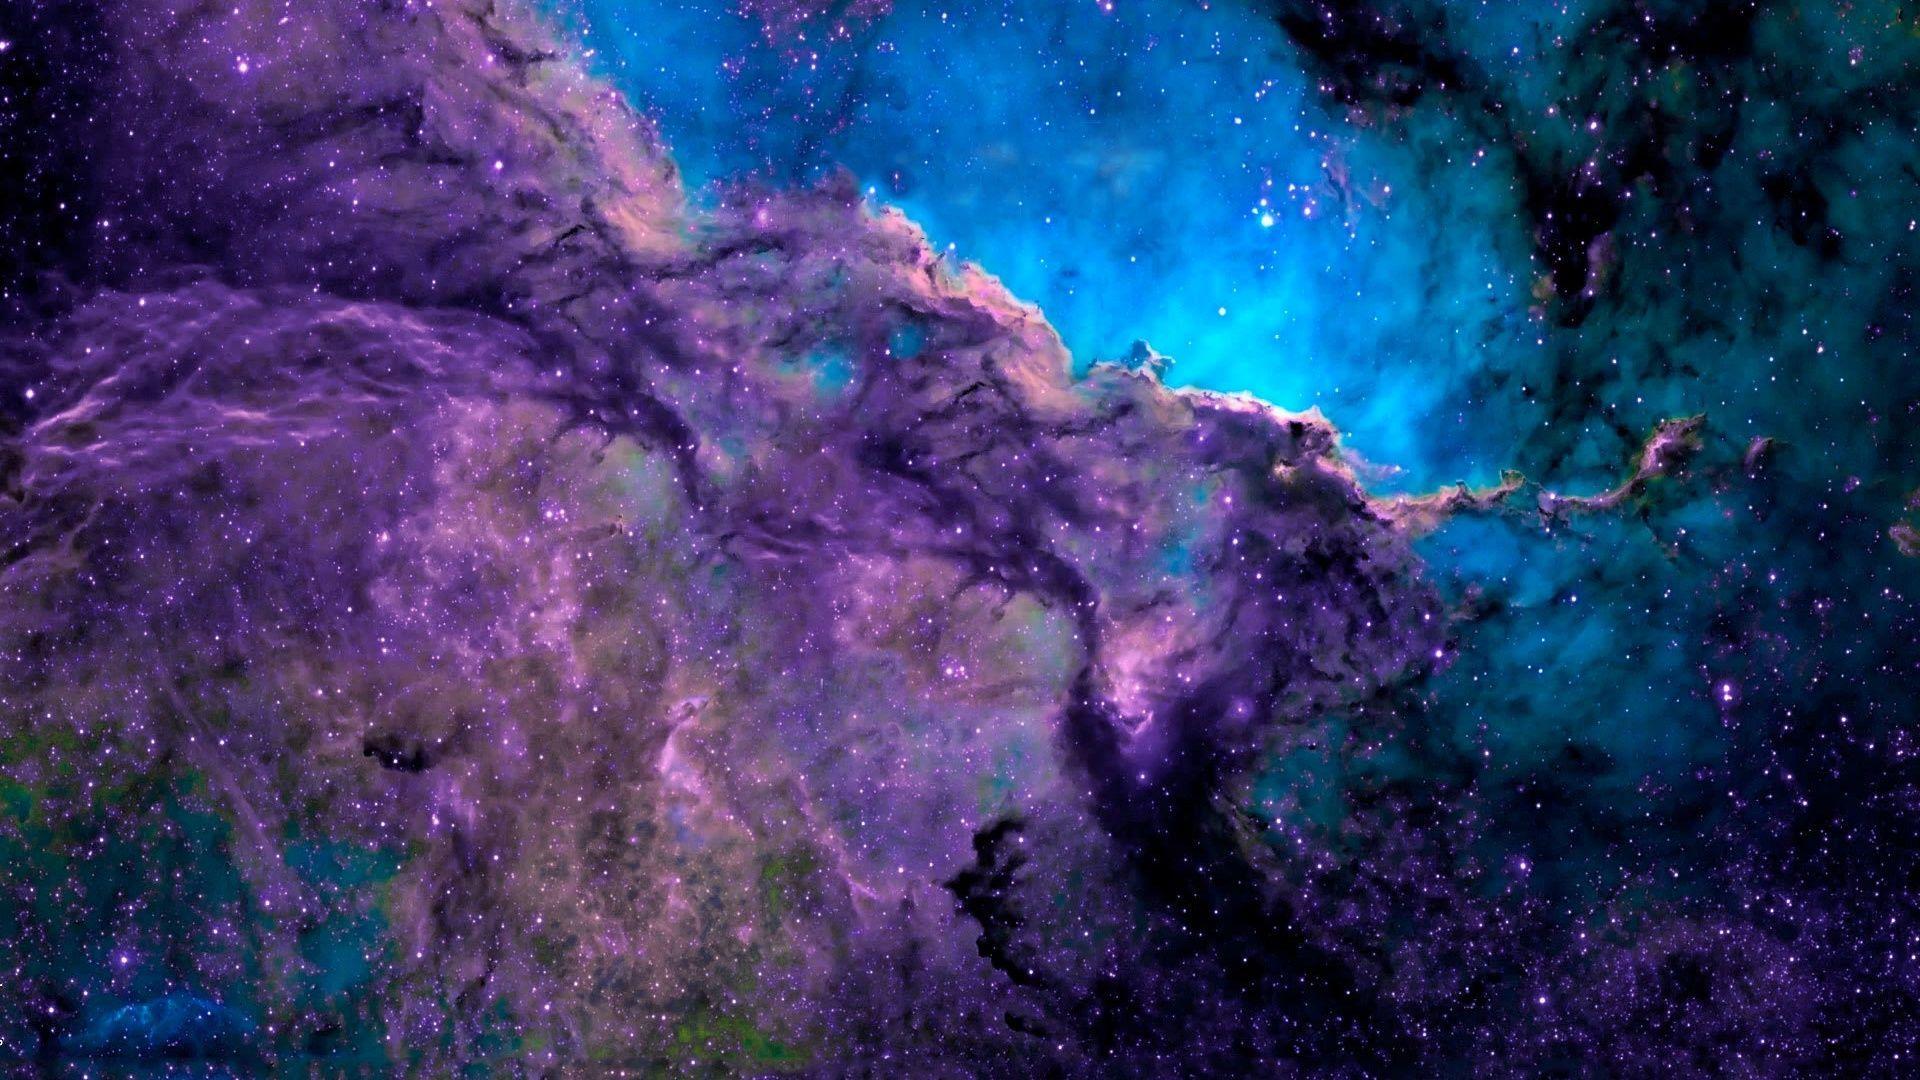 Purple Nebula Wallpapers Top Free Purple Nebula Backgrounds Wallpaperaccess